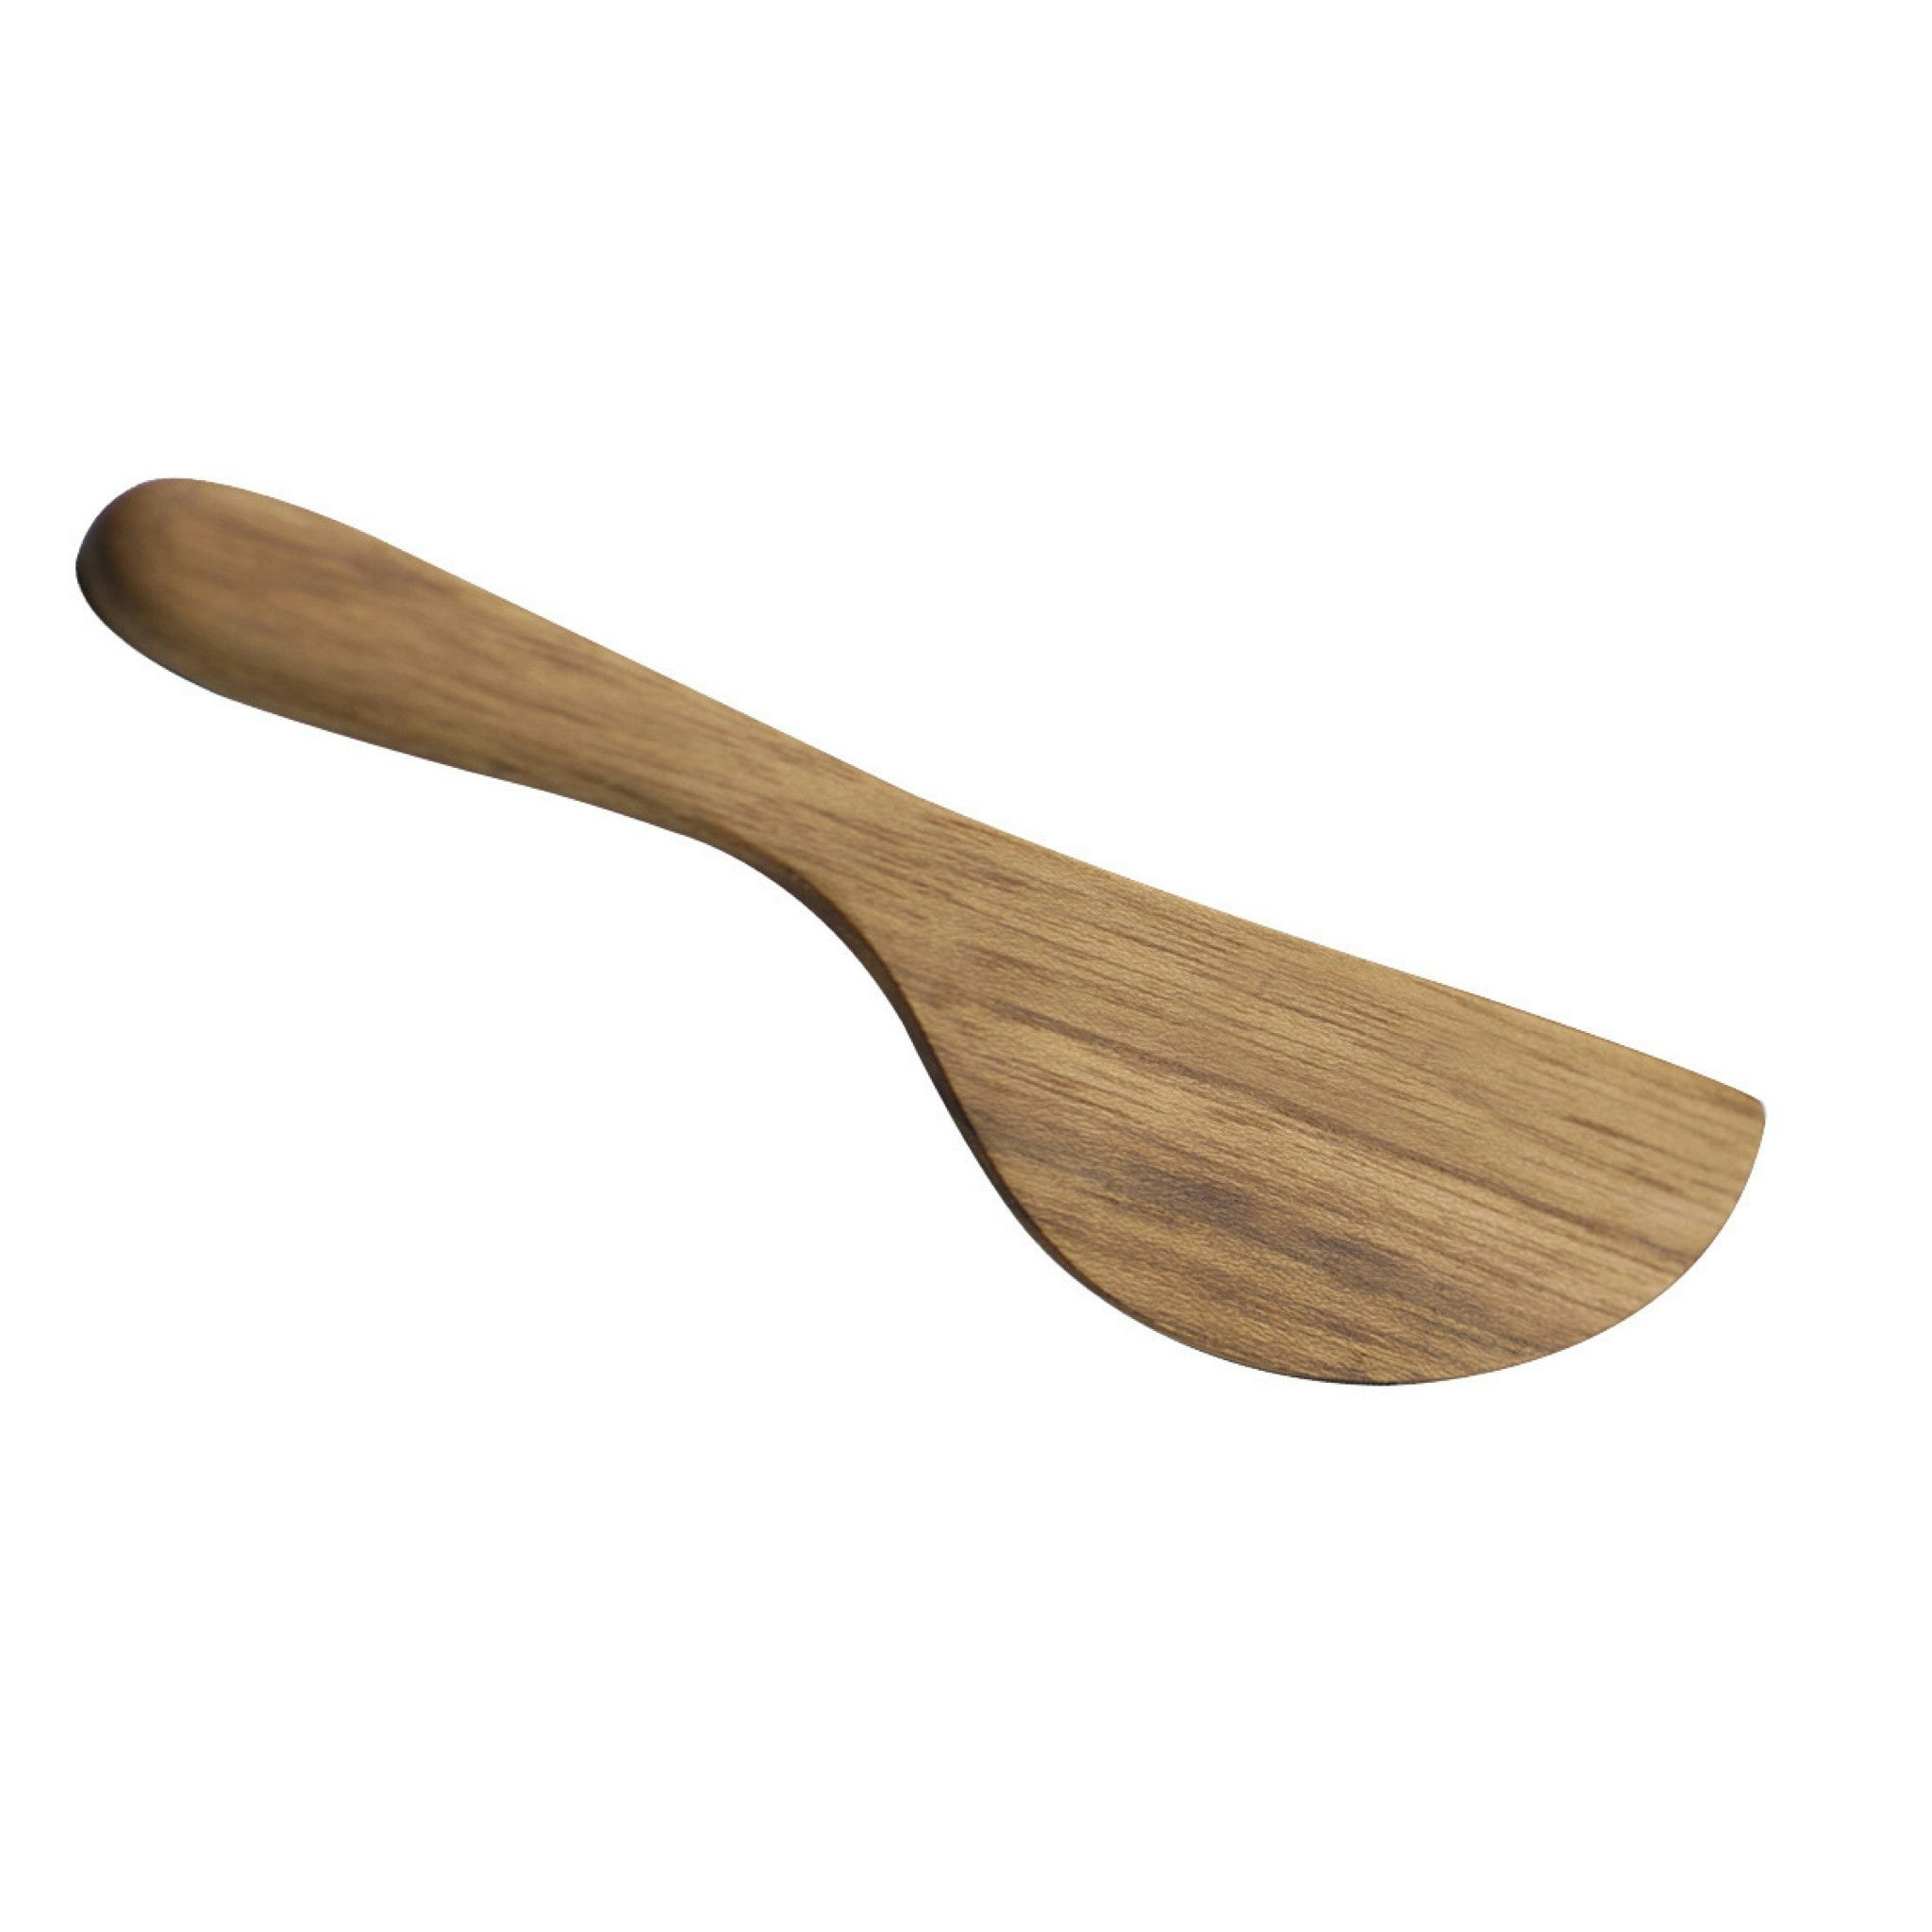 Nordic Wood knife by Skagerak